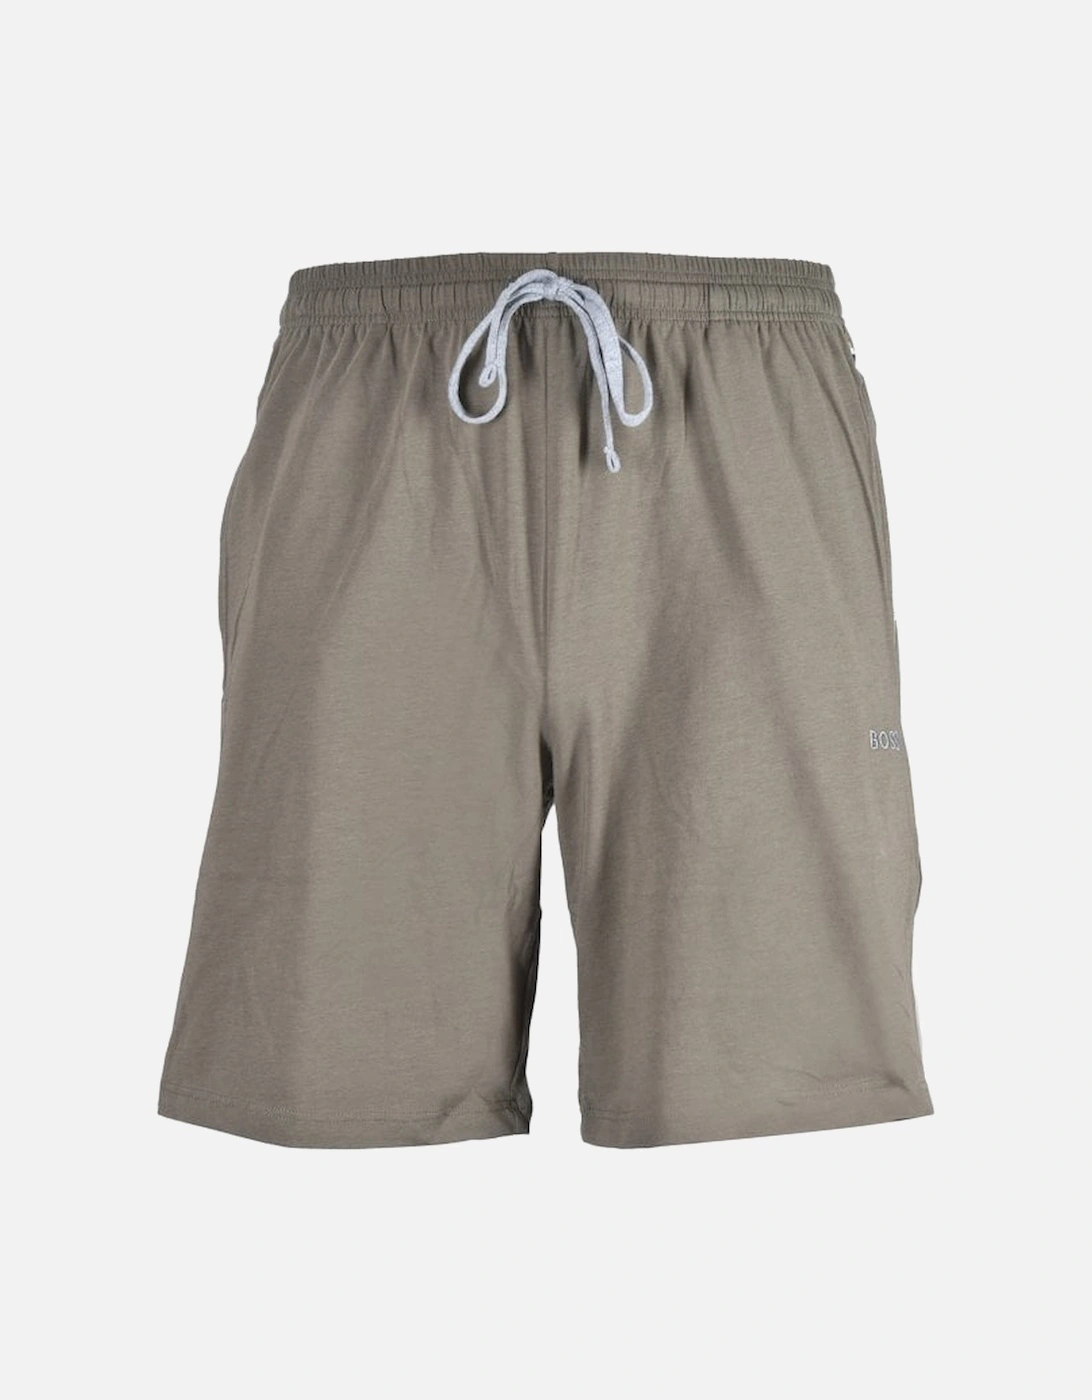 Mix & Match Loungewear Jogging Shorts, Khaki/grey, 4 of 3